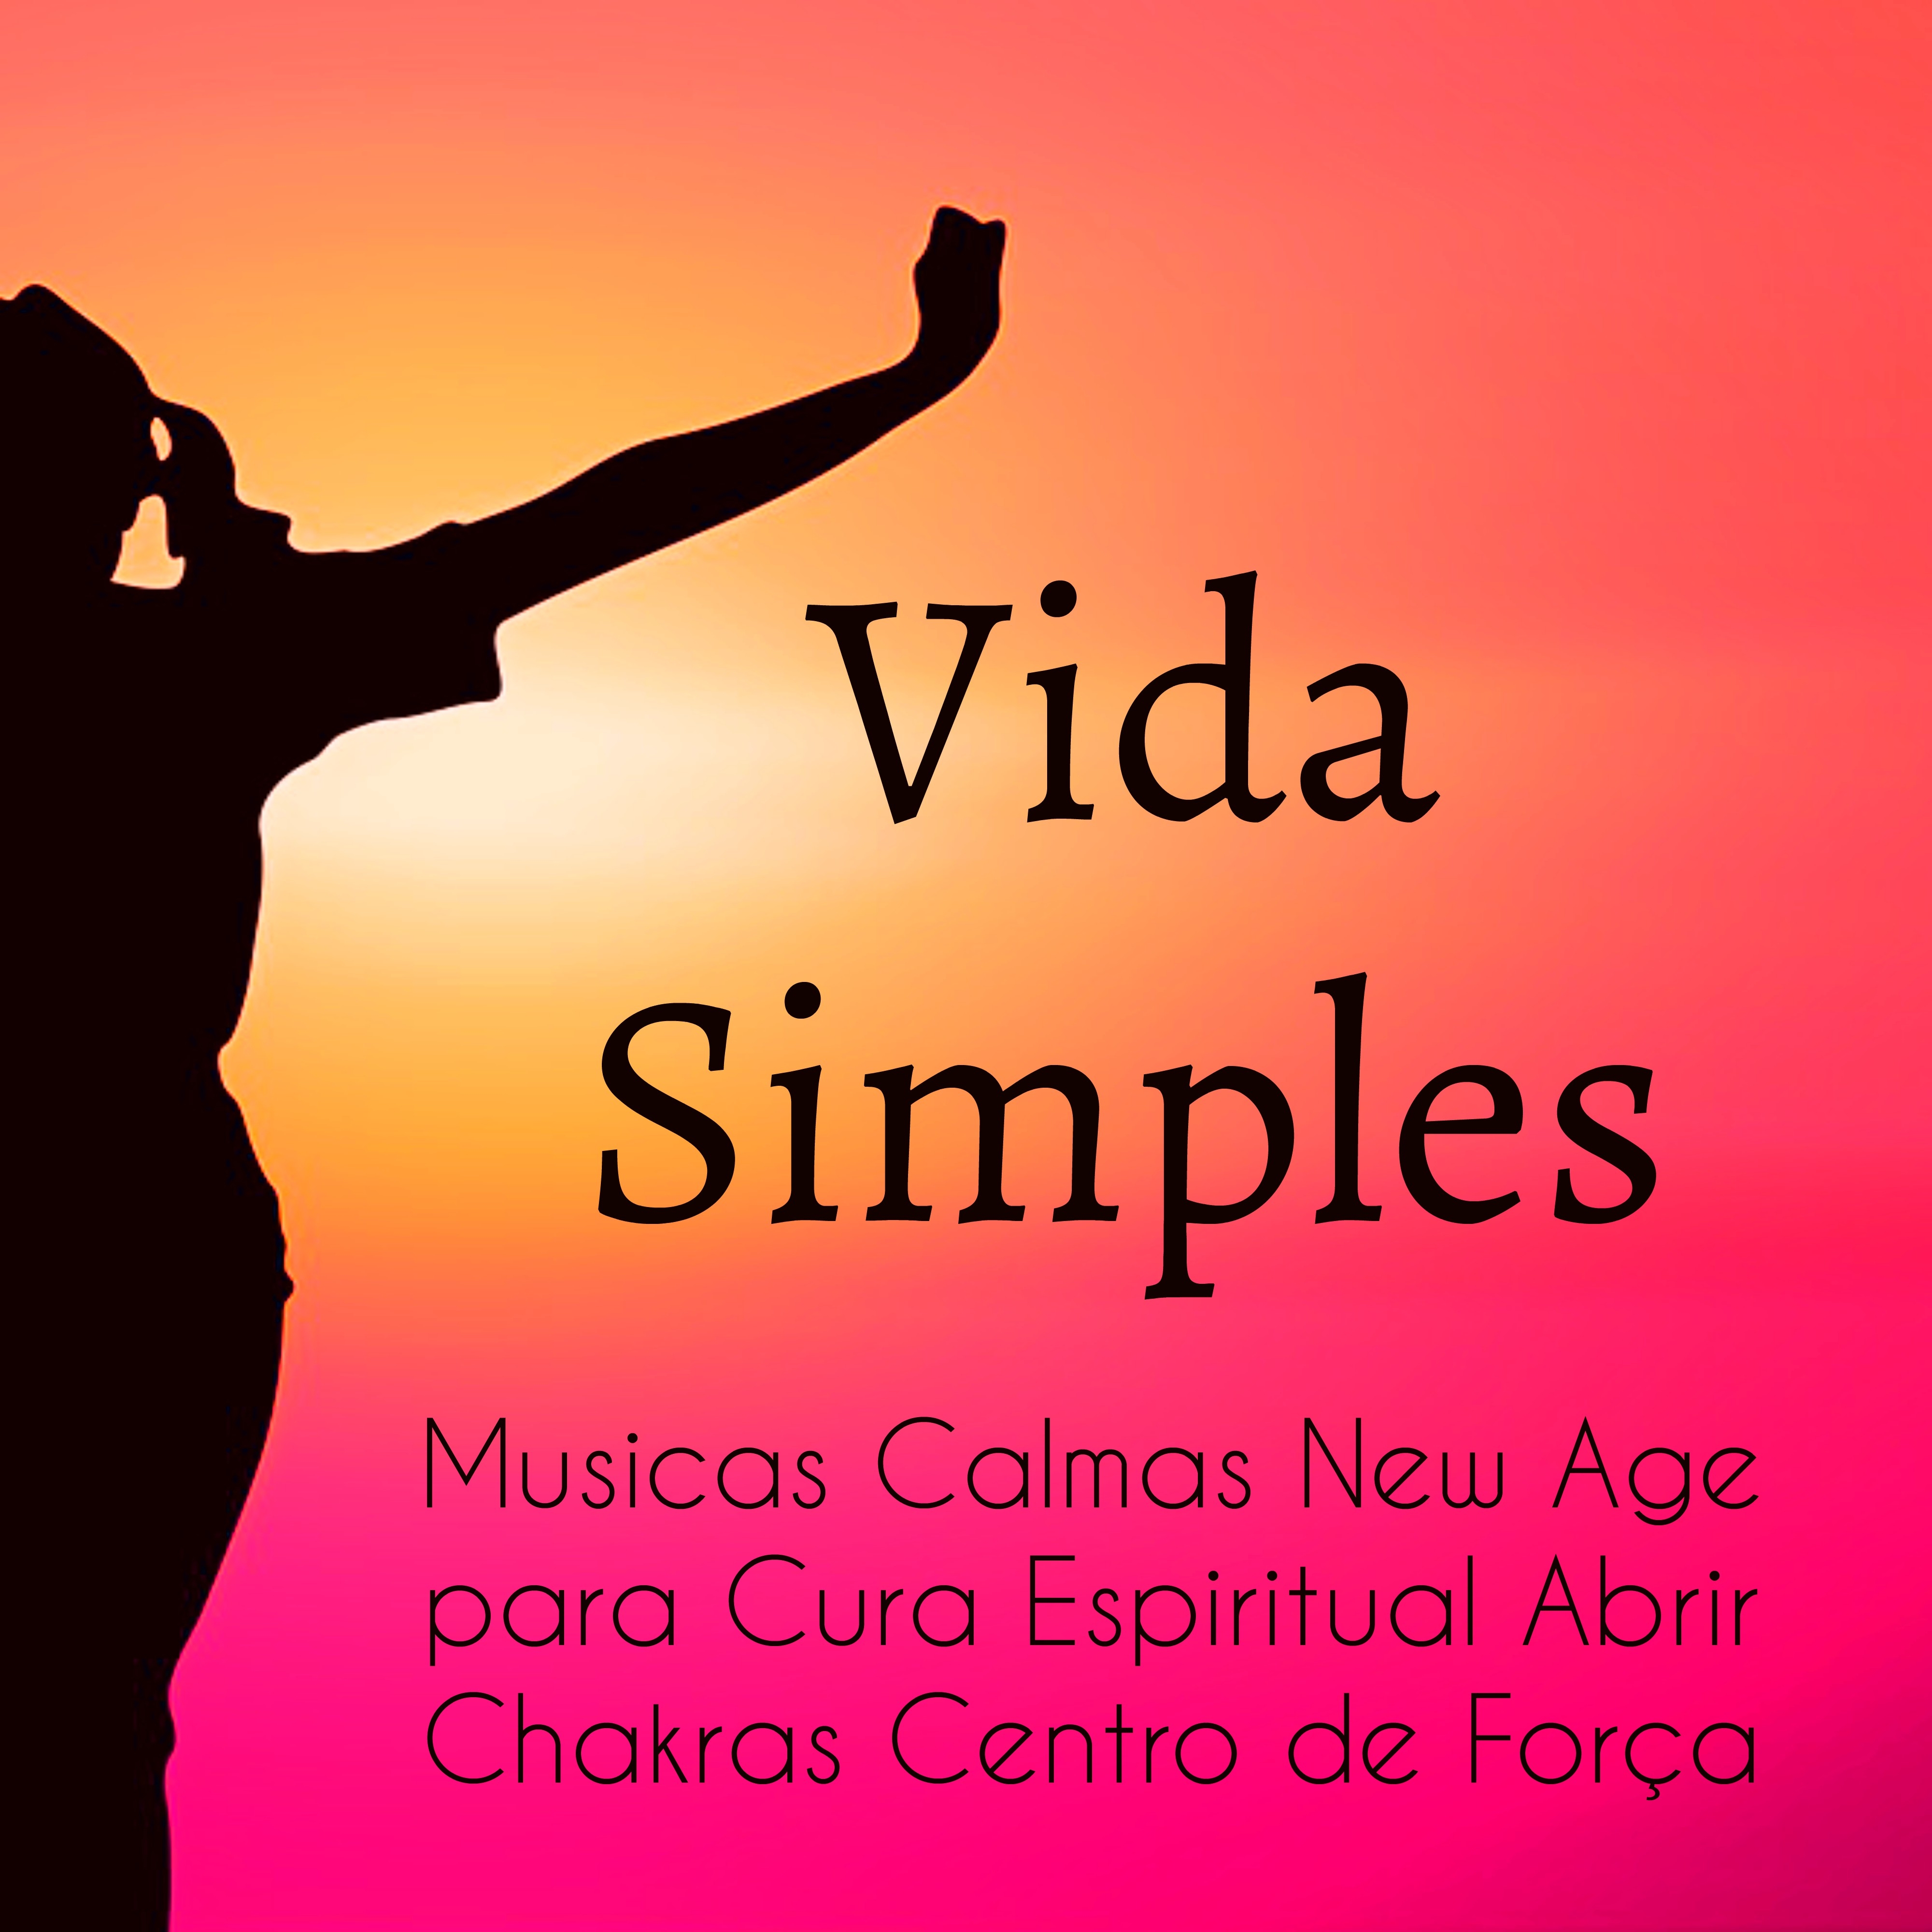 Vida Simples - Musicas Calmas New Age para Cura Espiritual Abrir Chakras Centro de Força com Sons da Natureza Relaxantes de Meditação